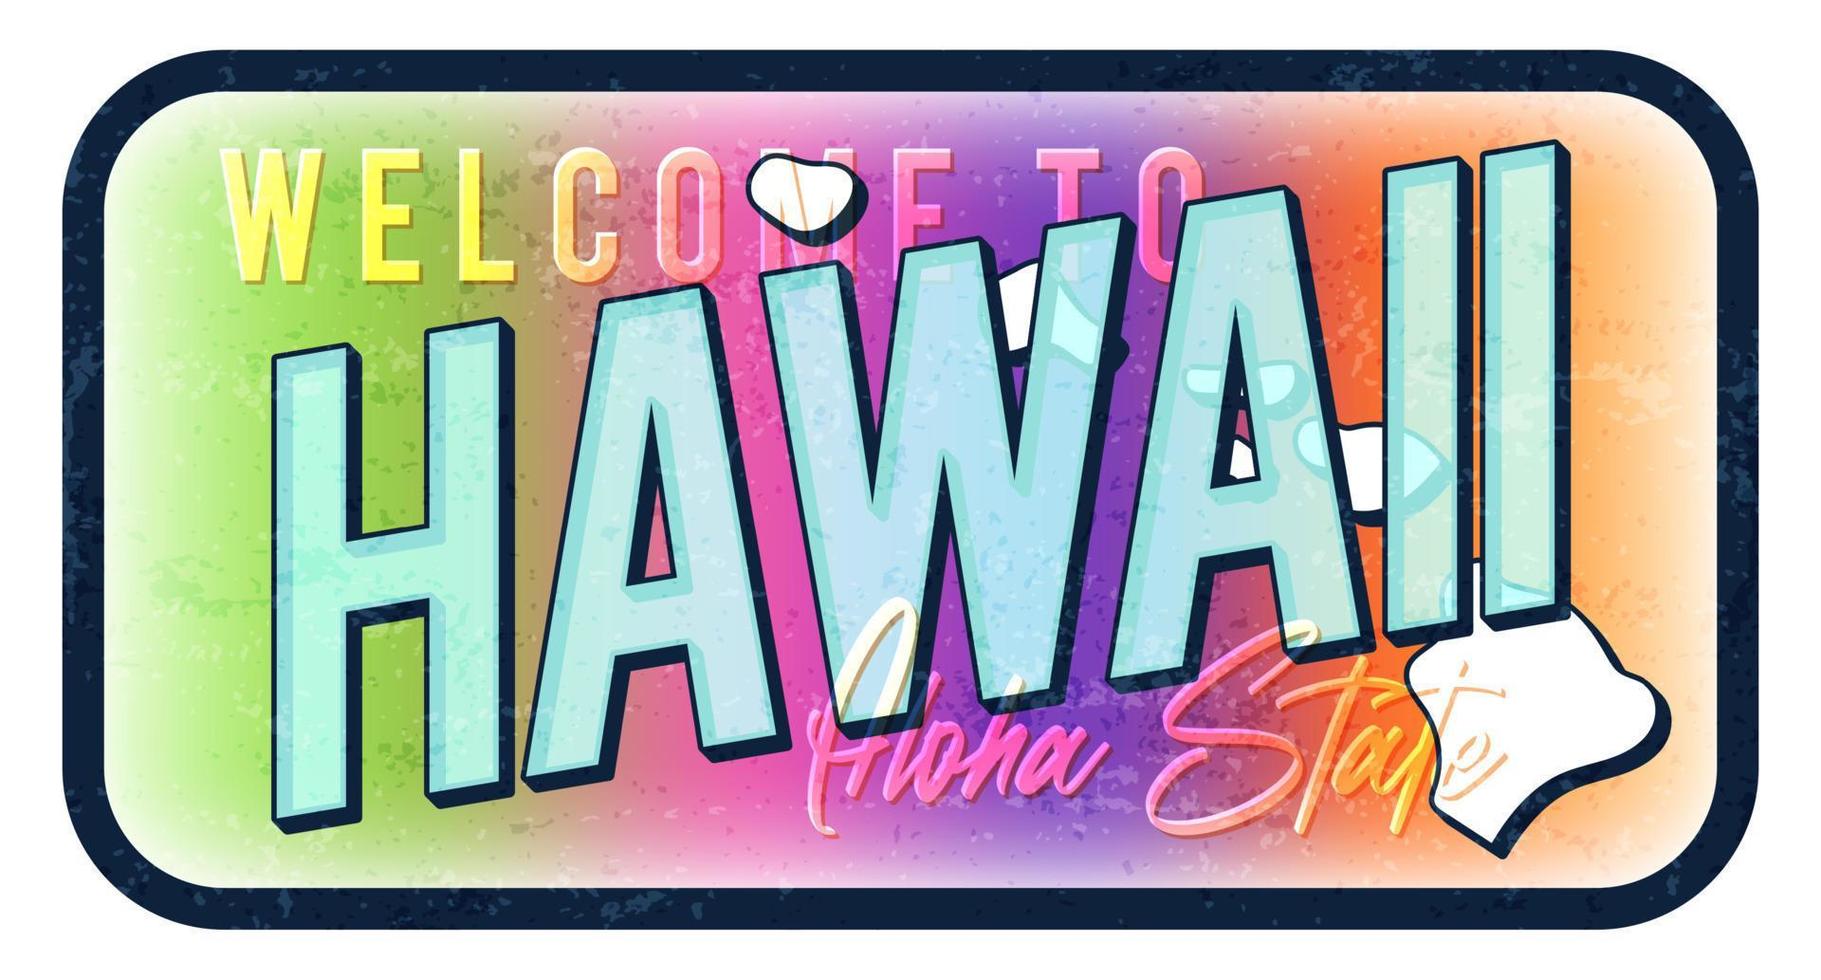 bienvenue à hawaii illustration vectorielle de signe de métal rouillé vintage. carte d'état de vecteur dans le style grunge avec typographie lettrage dessiné à la main